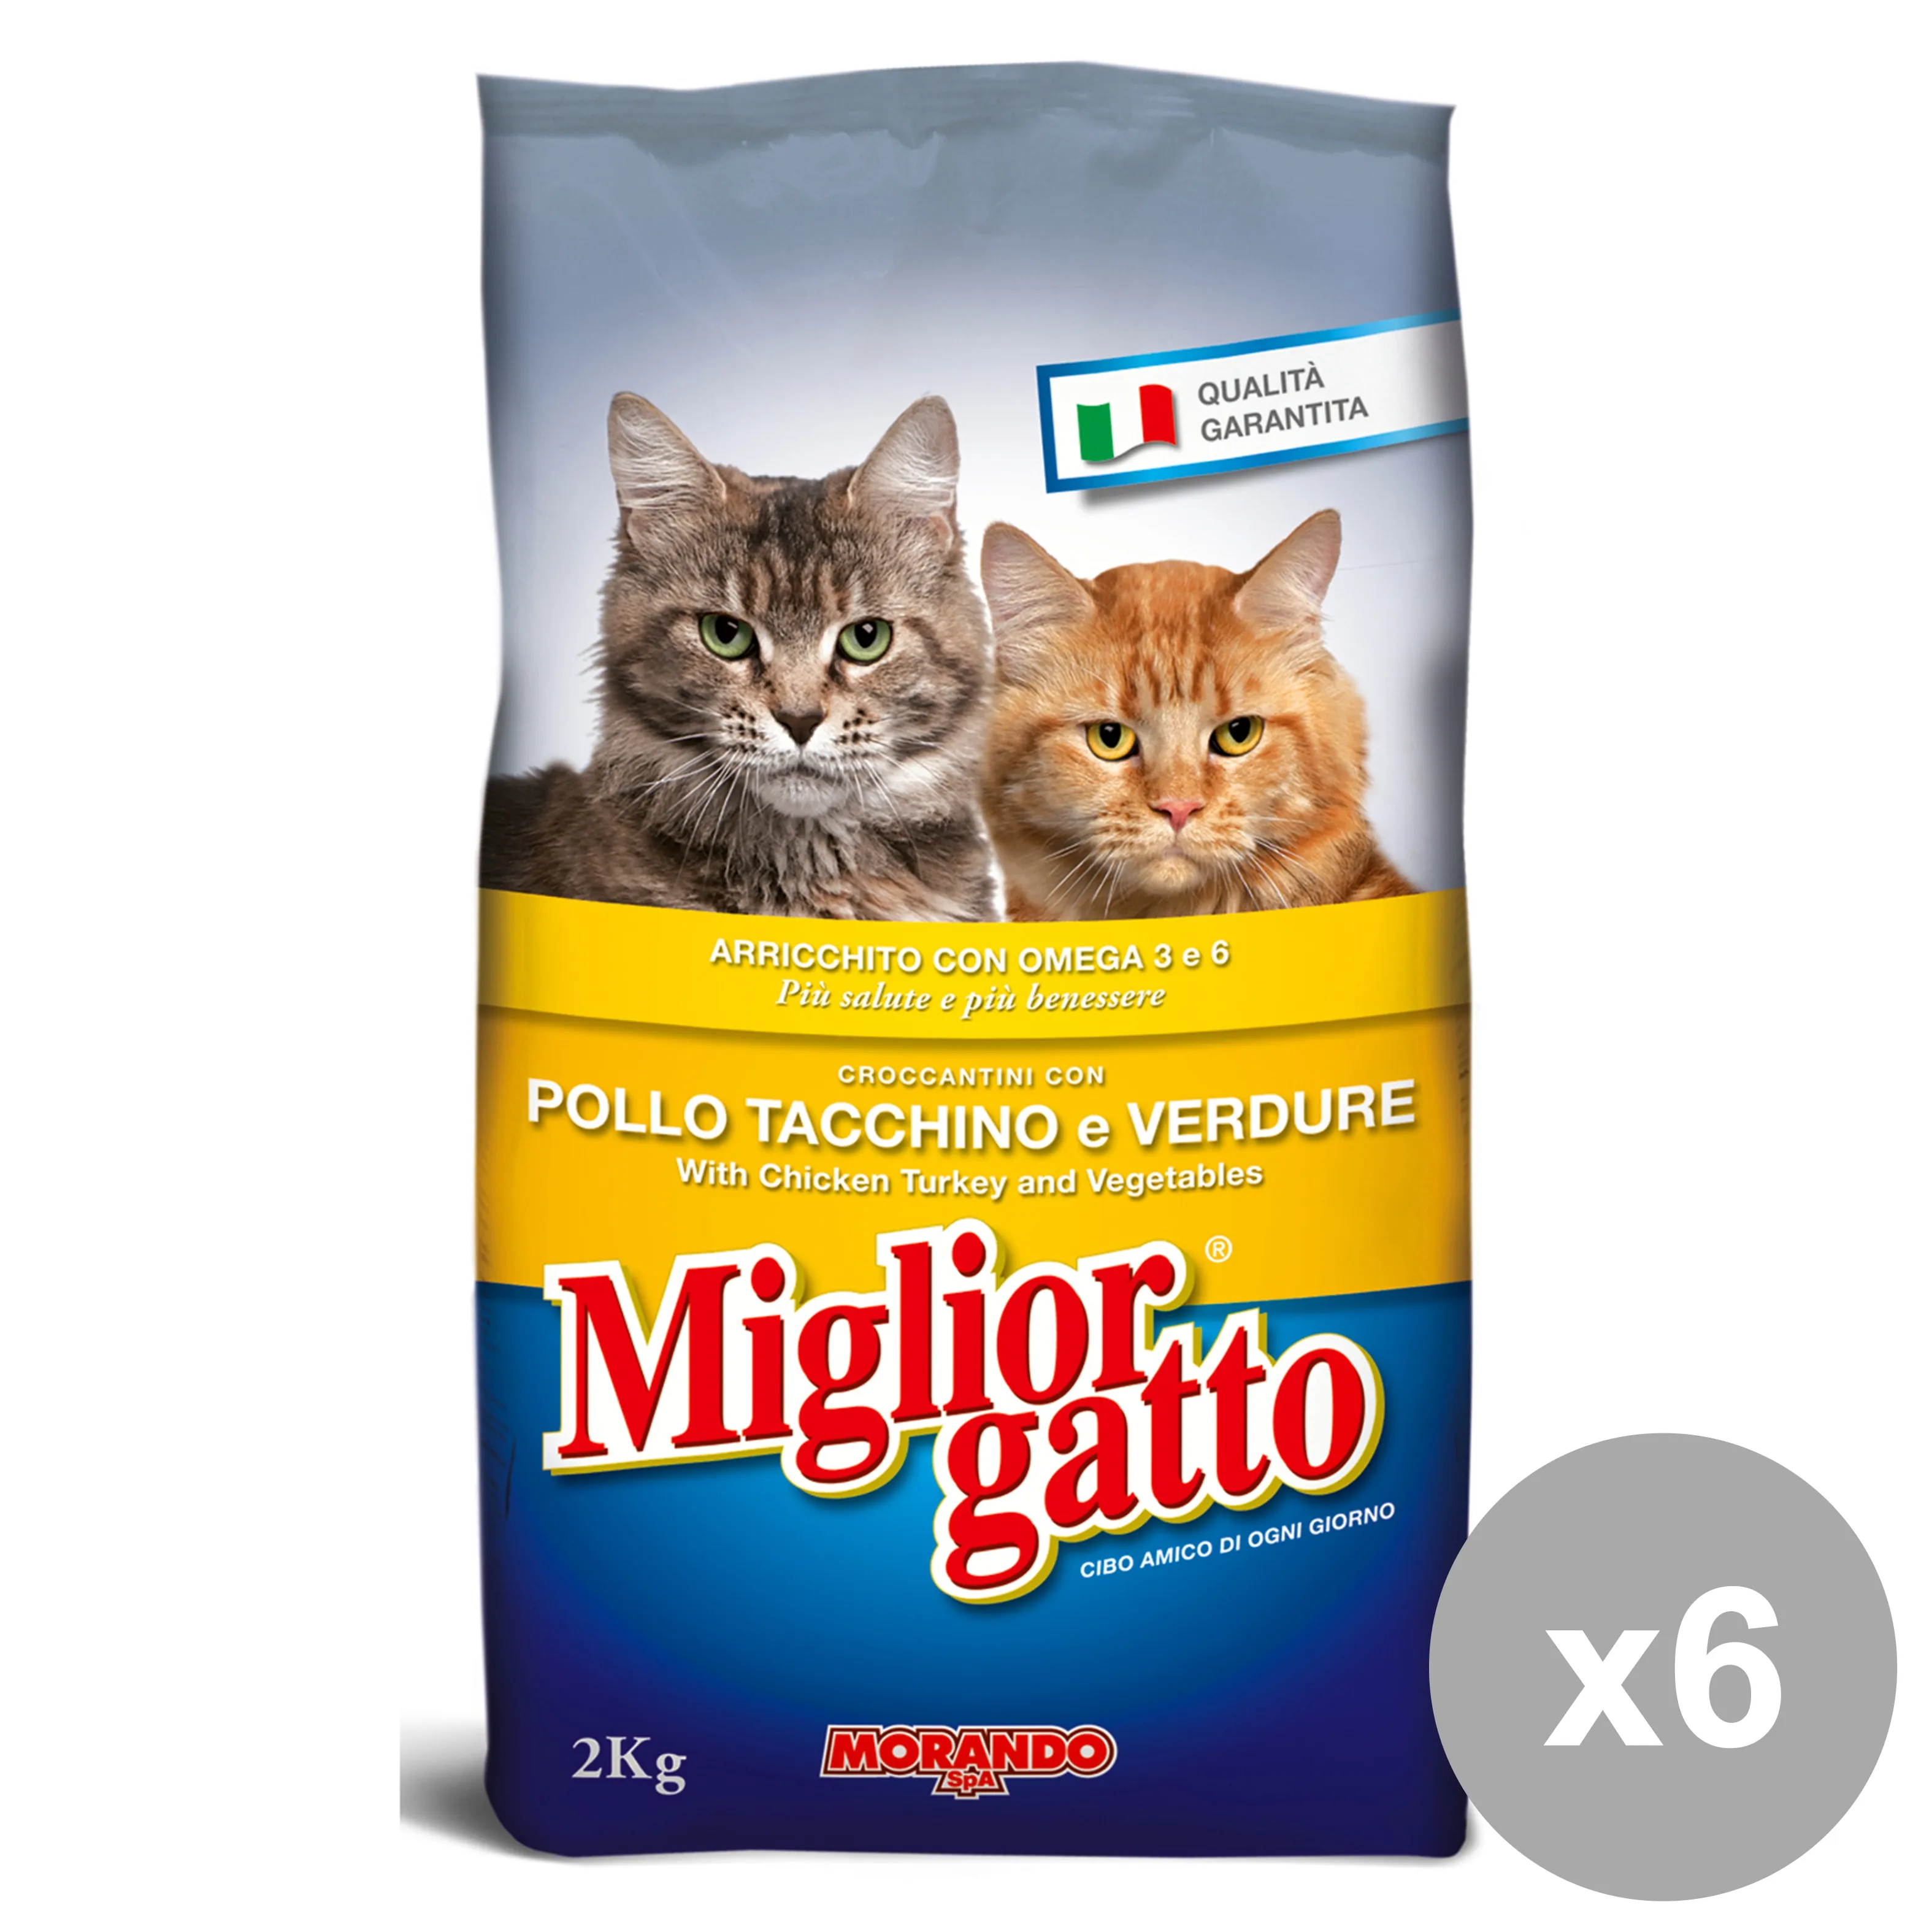 "MIGLIOR GATTO Set 6 2 Kg.Secco Pollo-Tacchino -Verdure Cibo Per Gatti"